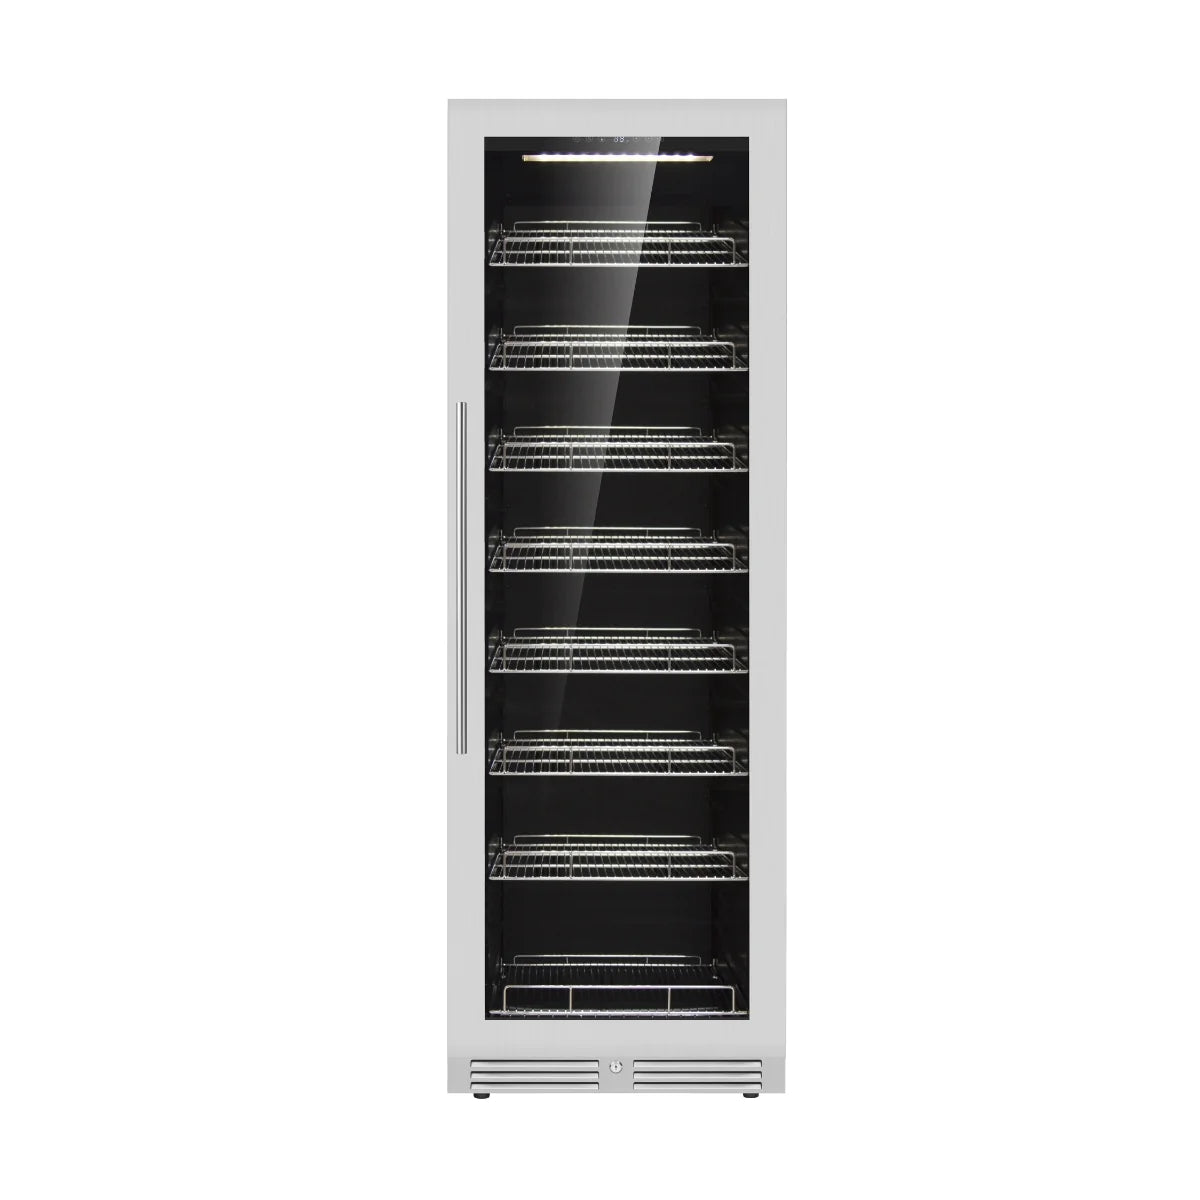 Kingsbottle Large Beverage Refrigerator With Low-E Glass Door - KBU425BX